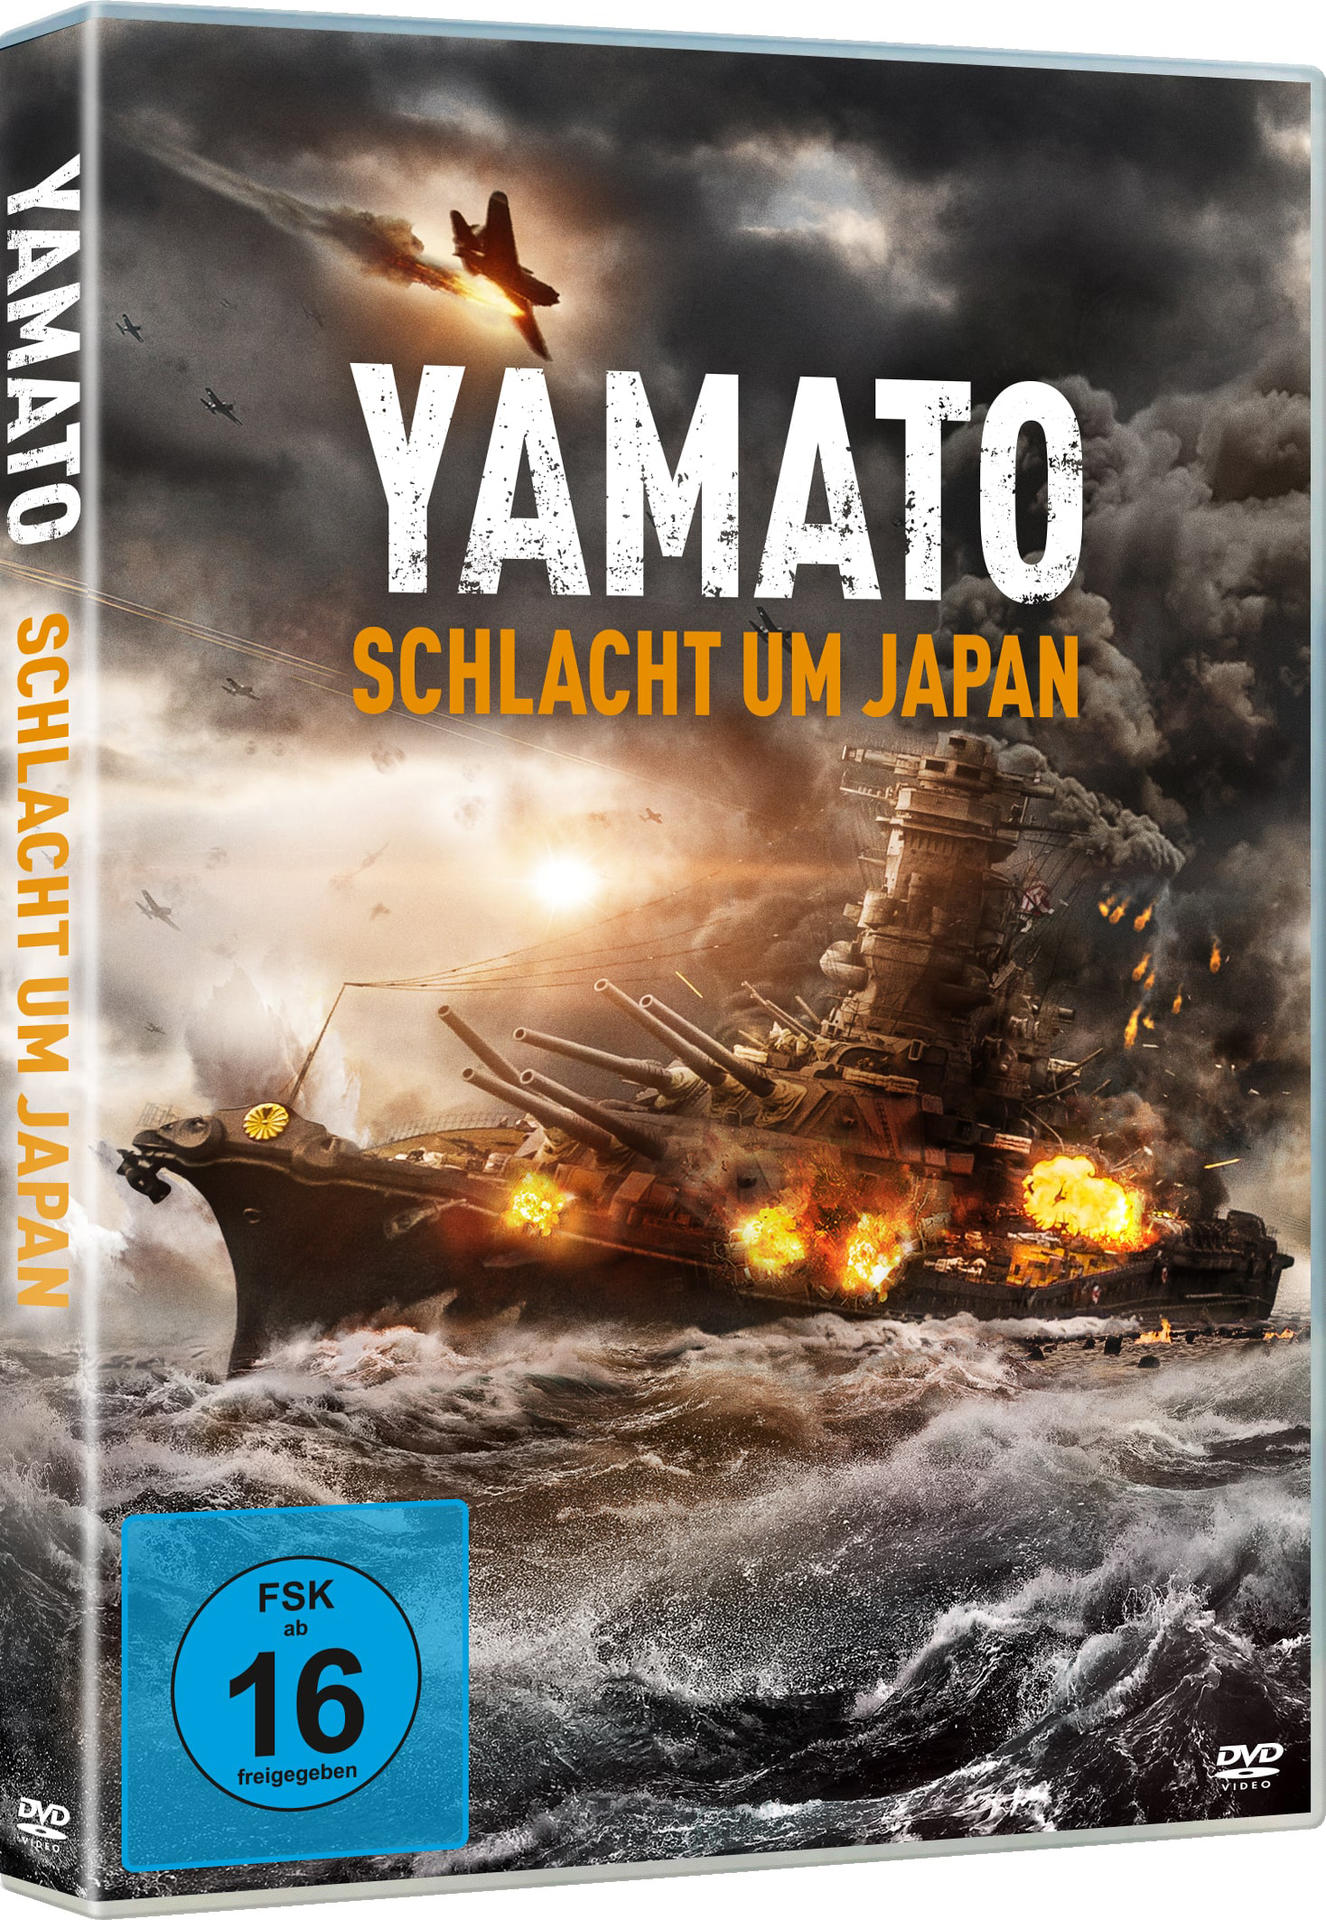 Yamato - um DVD Schlacht Japan